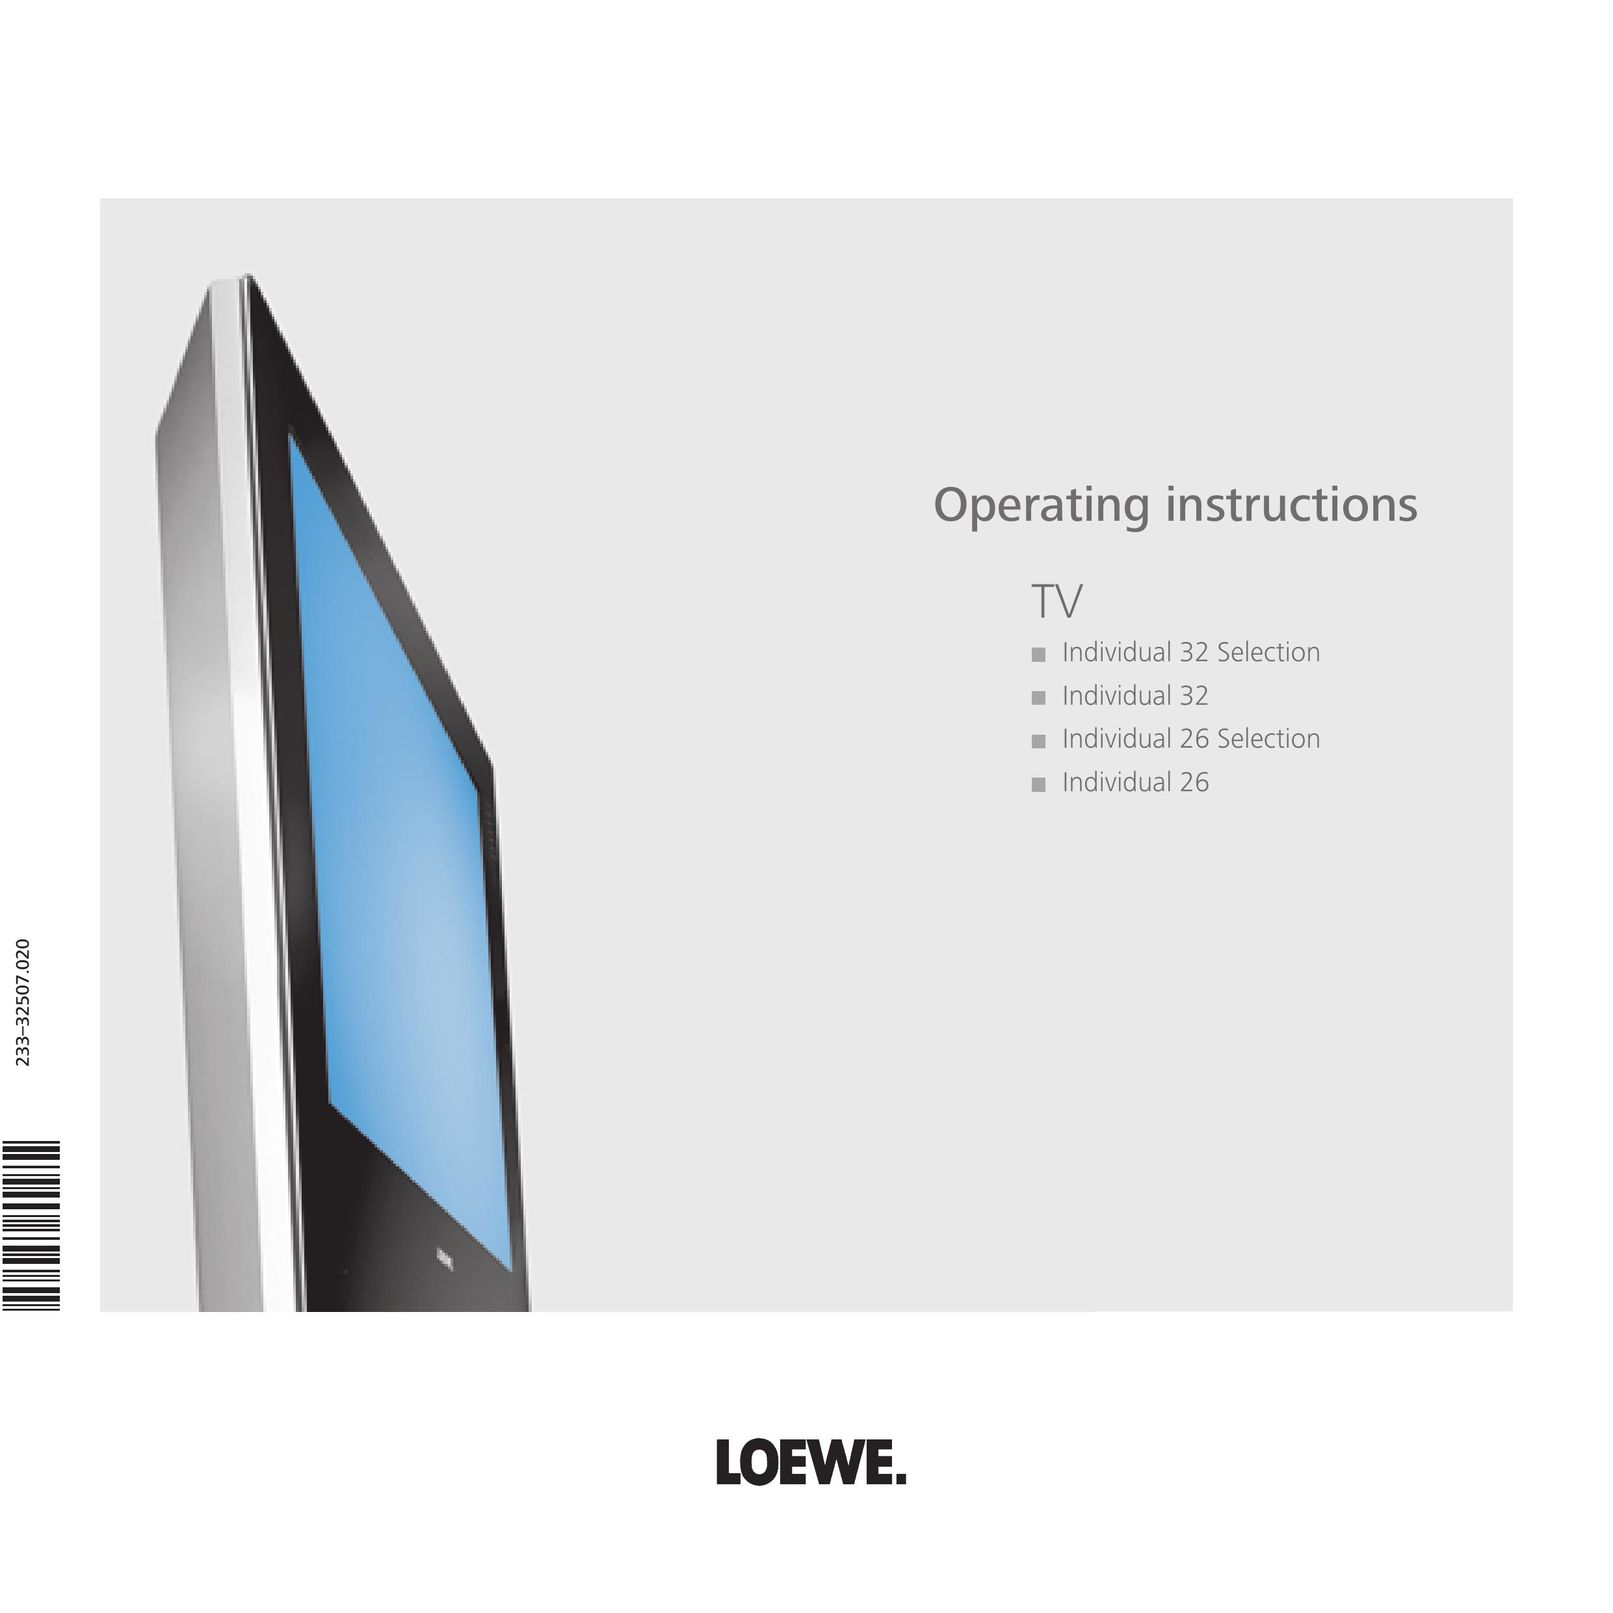 Loewe 23332507.020 Flat Panel Television User Manual